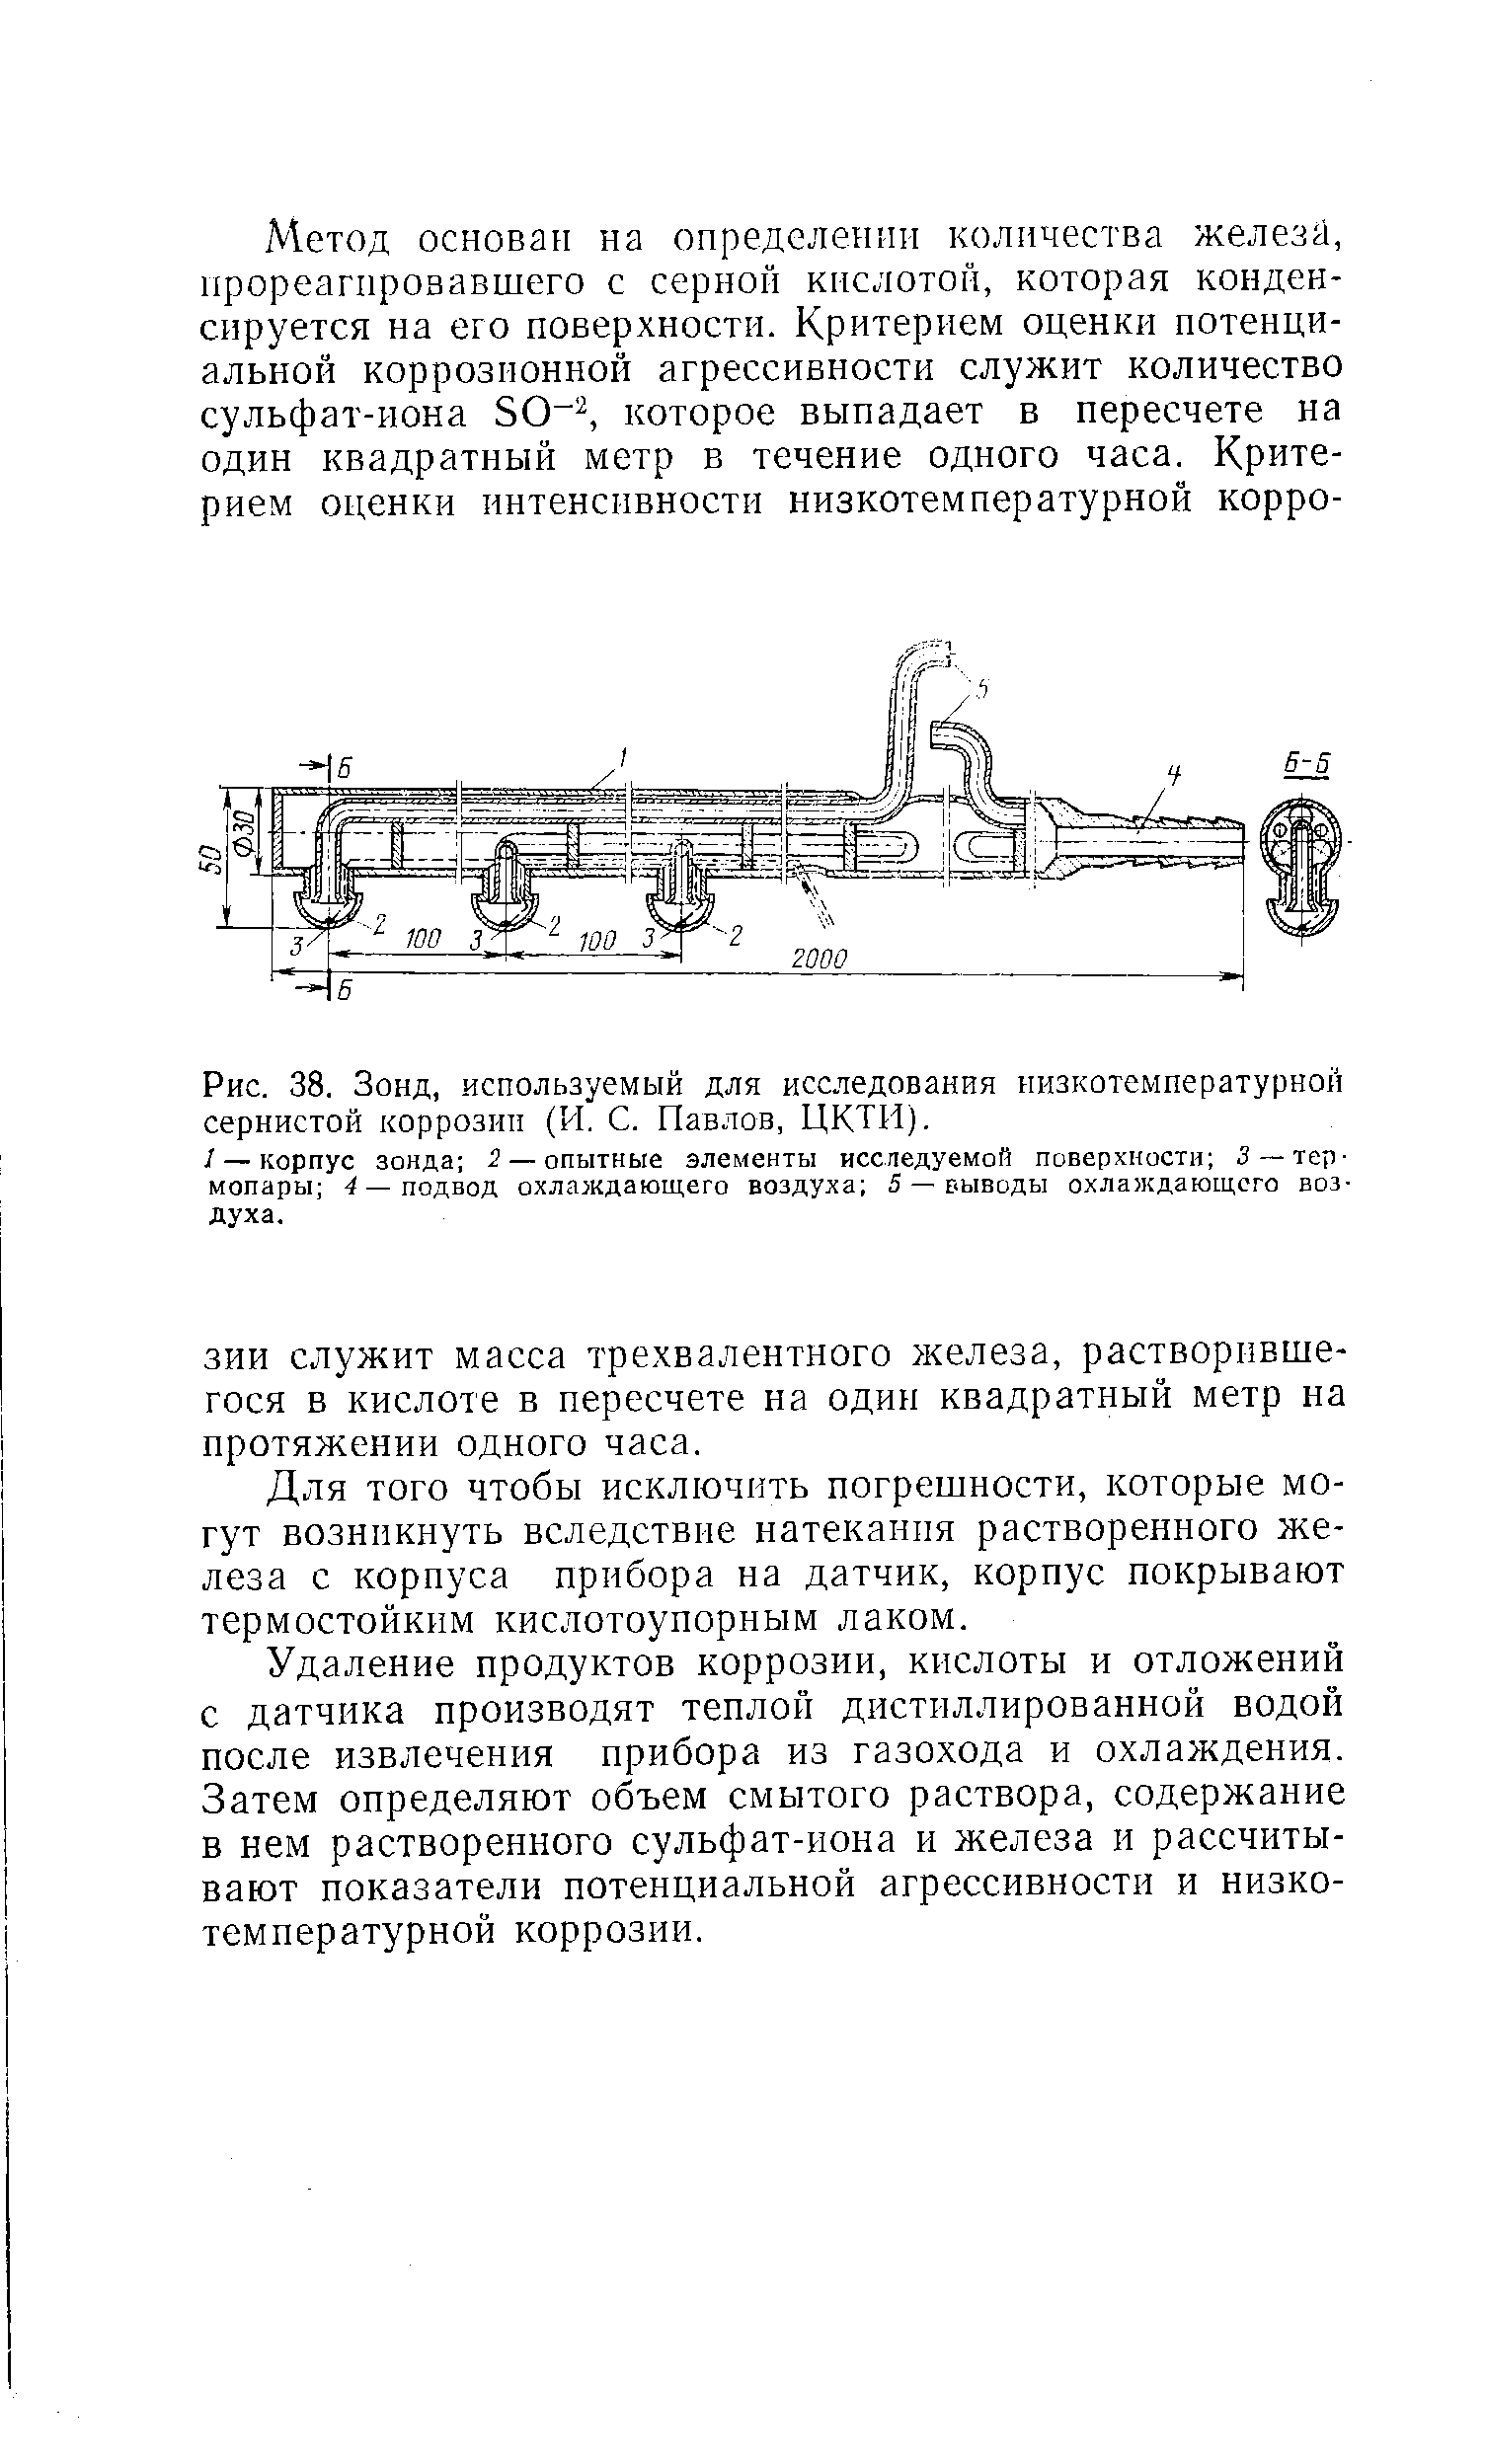 Рис. 38. Зонд, используемый для исследования низкотемпературной сернистой коррозии (И. С. Павлов, ЦКТИ).
